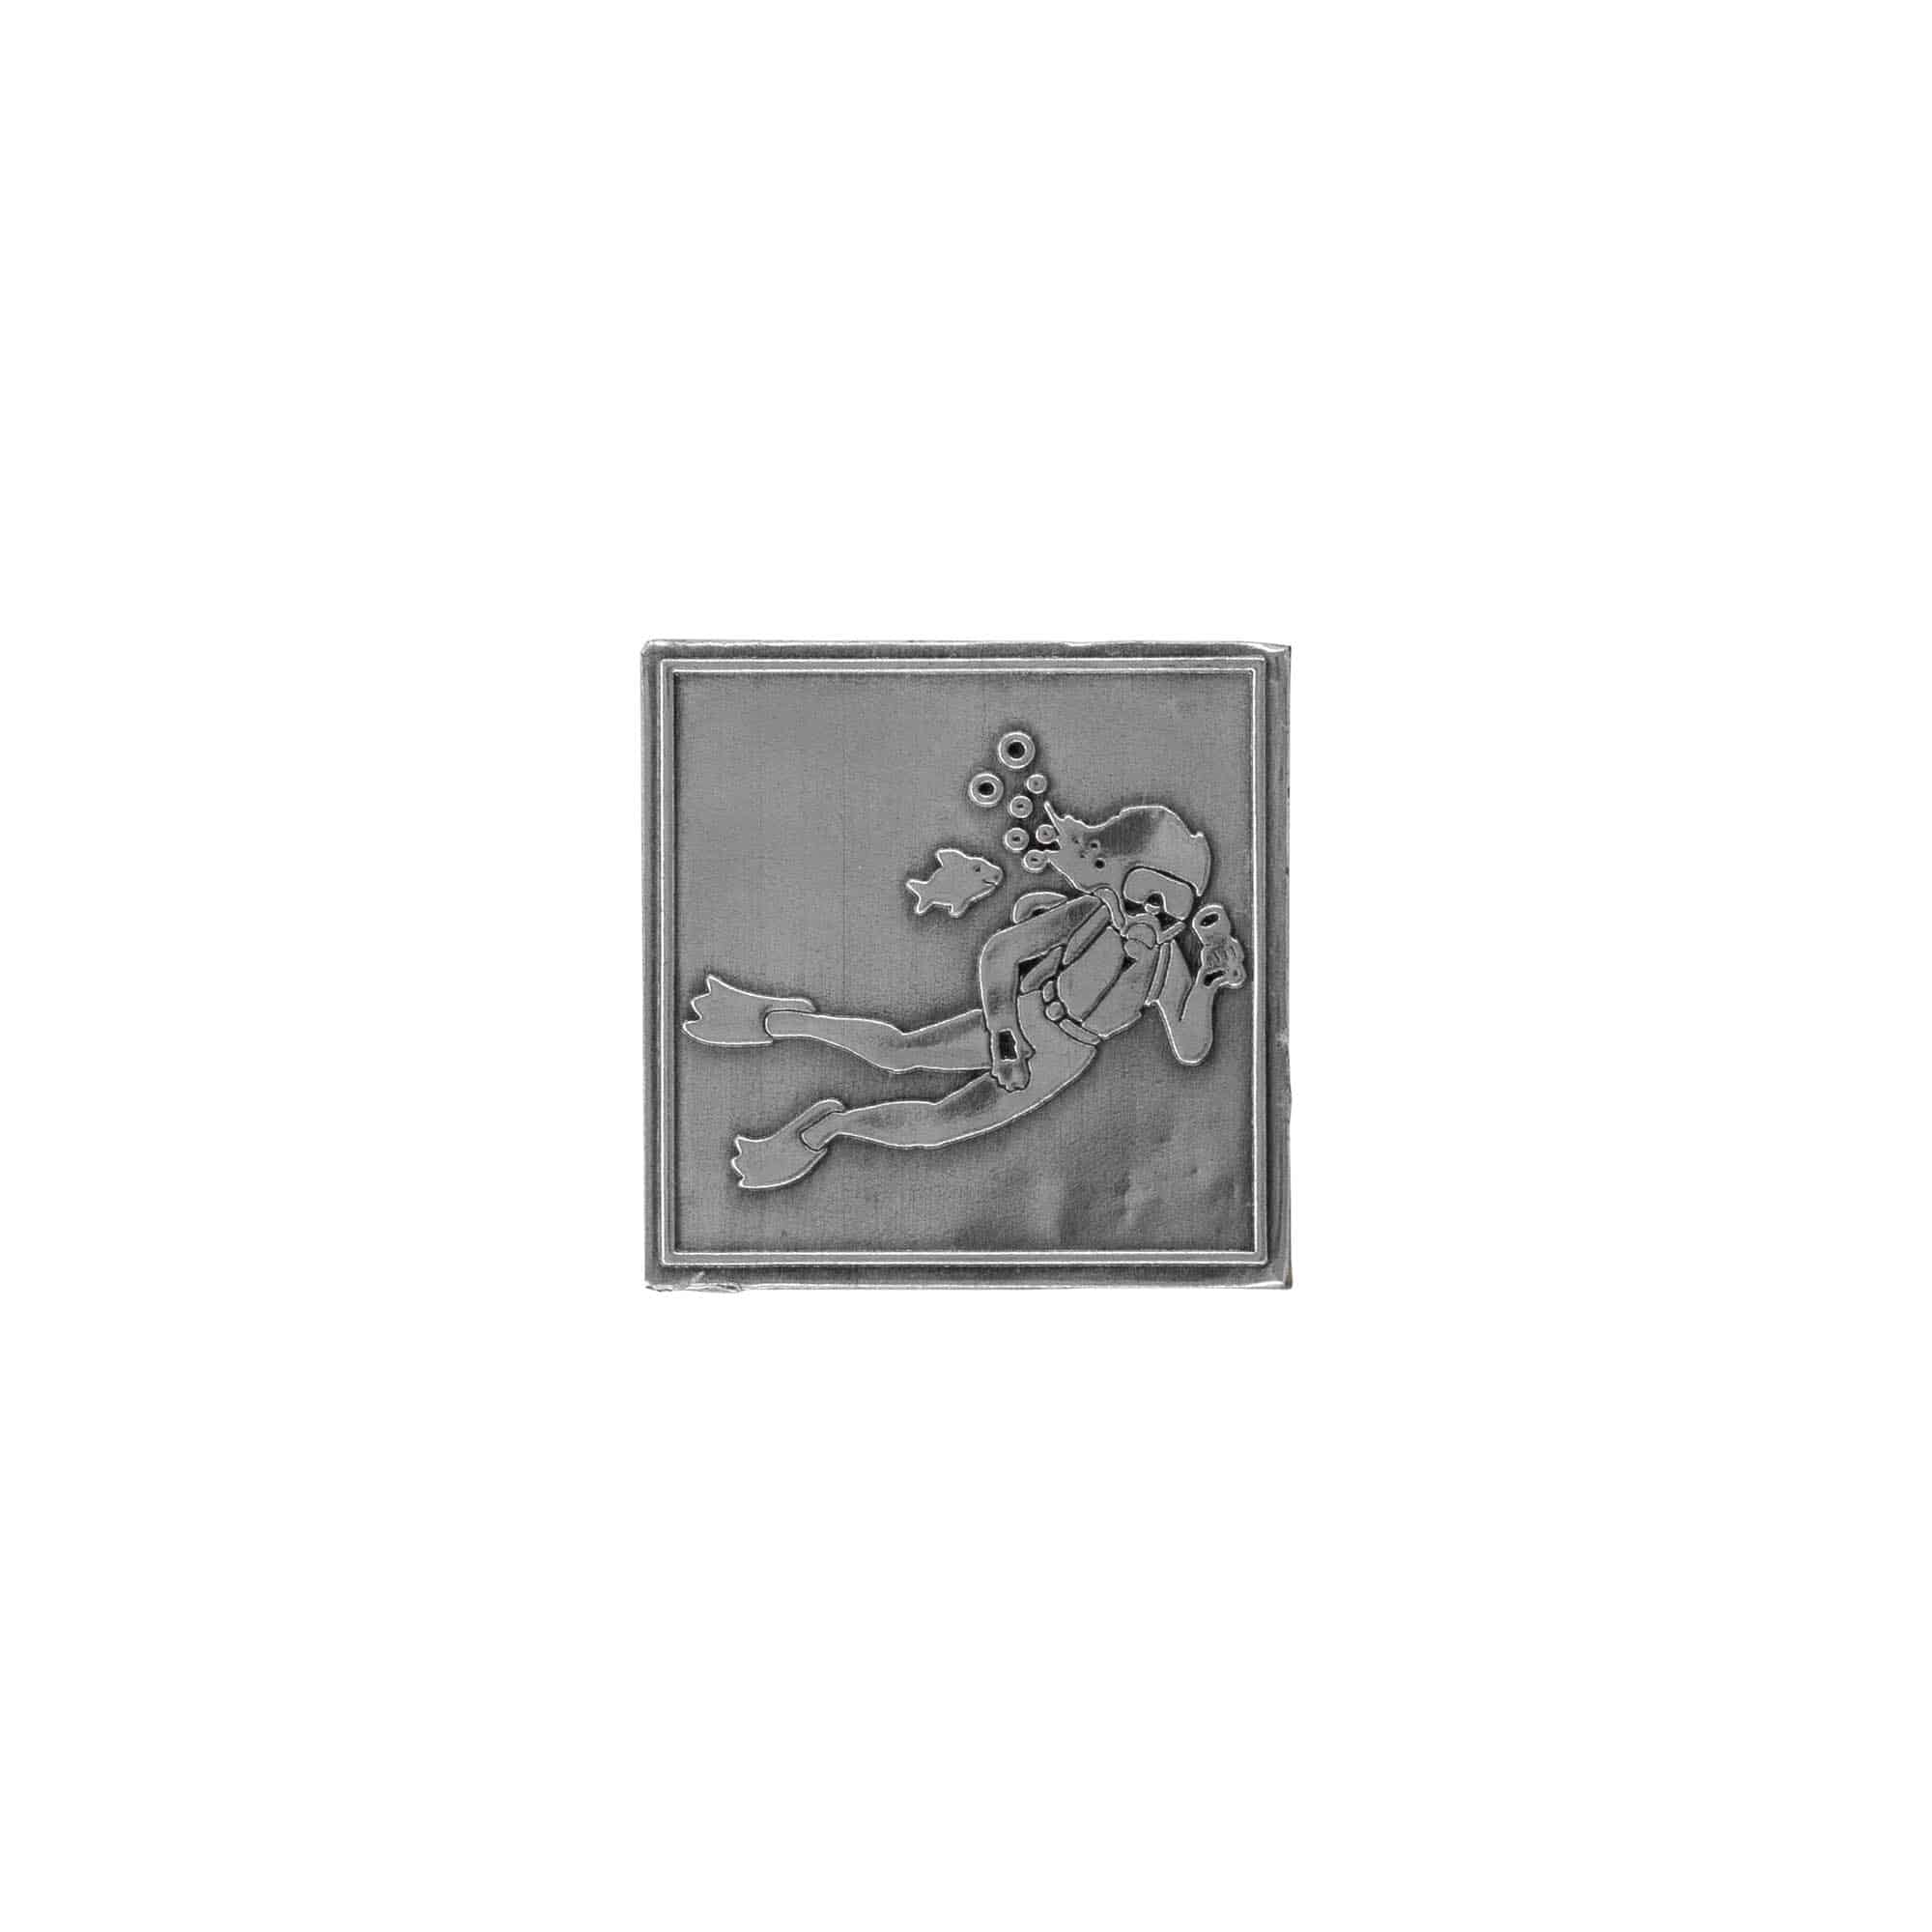 Etichetta metallica 'Subacqueo', quadrata, stagno, argento